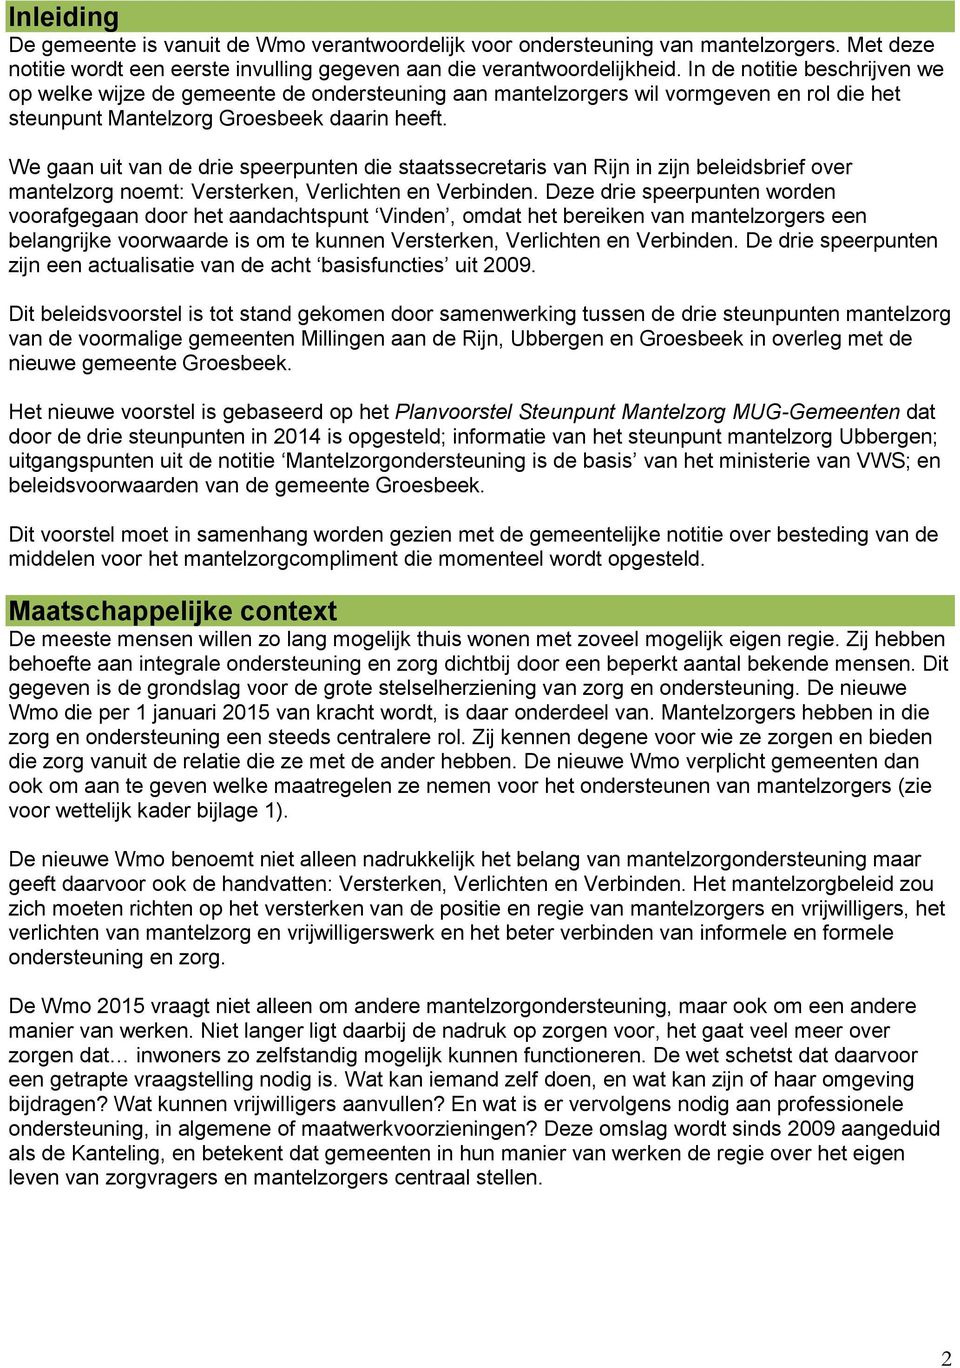 We gaan uit van de drie speerpunten die staatssecretaris van Rijn in zijn beleidsbrief over mantelzorg noemt: Versterken, Verlichten en Verbinden.